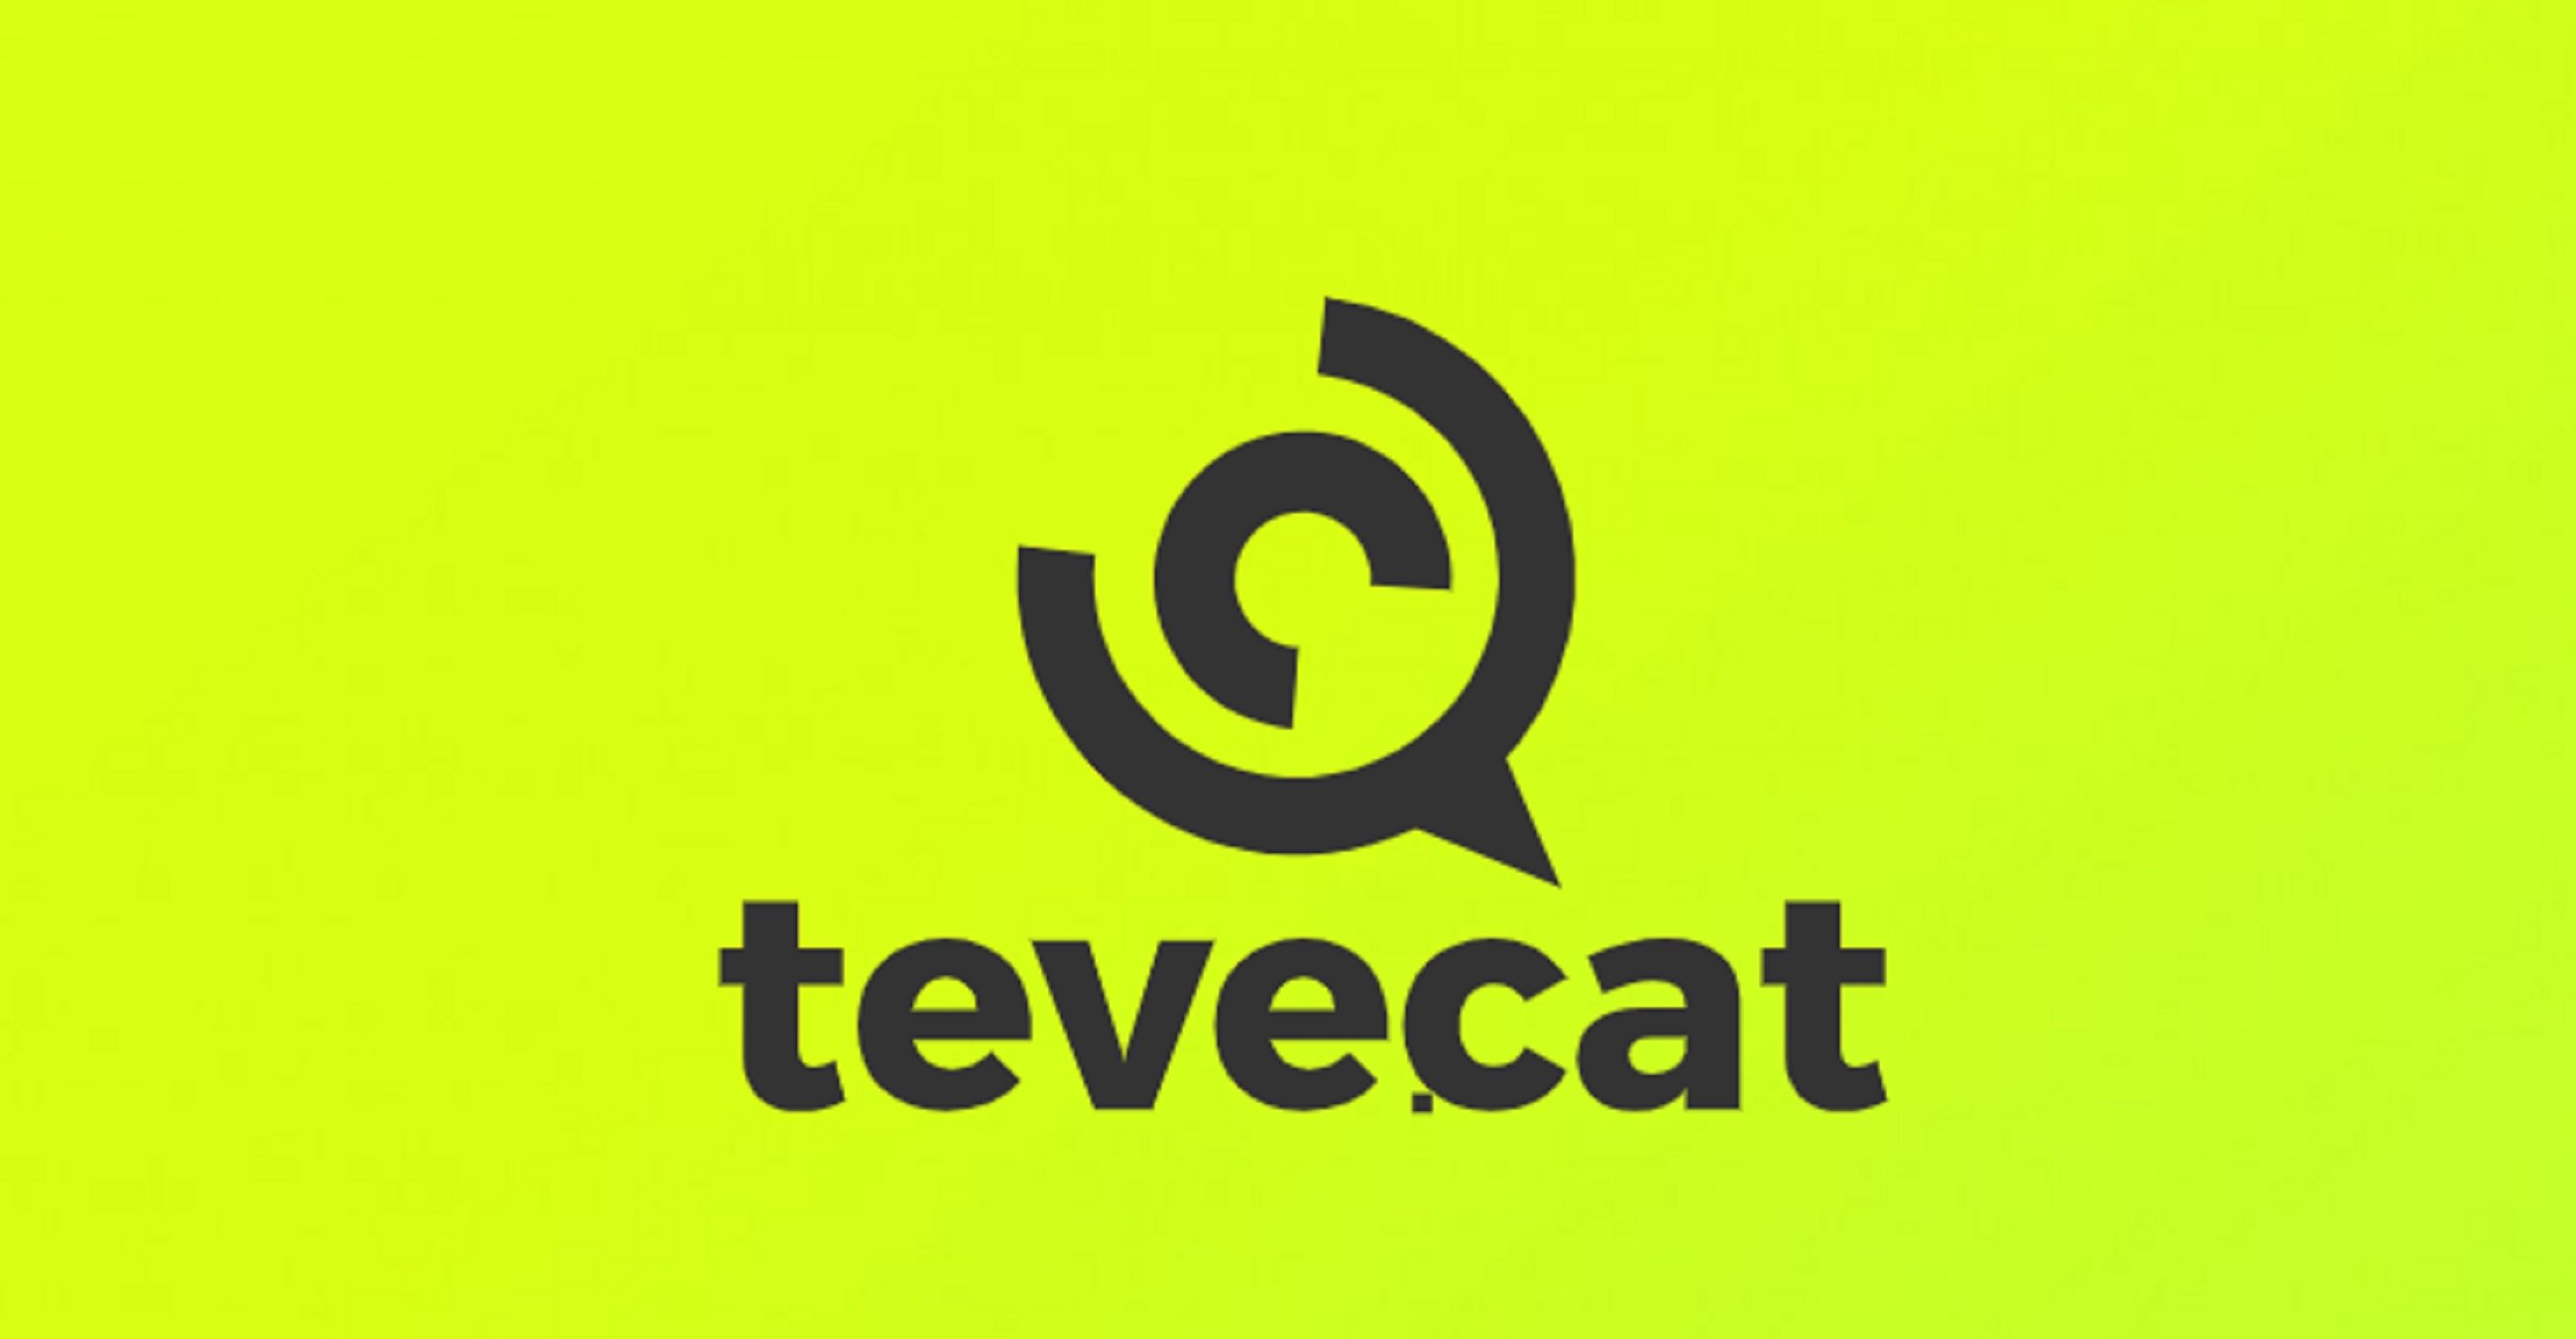 Teve.cat ficha a un ex de TV3 y de Telecinco para hacer un late night